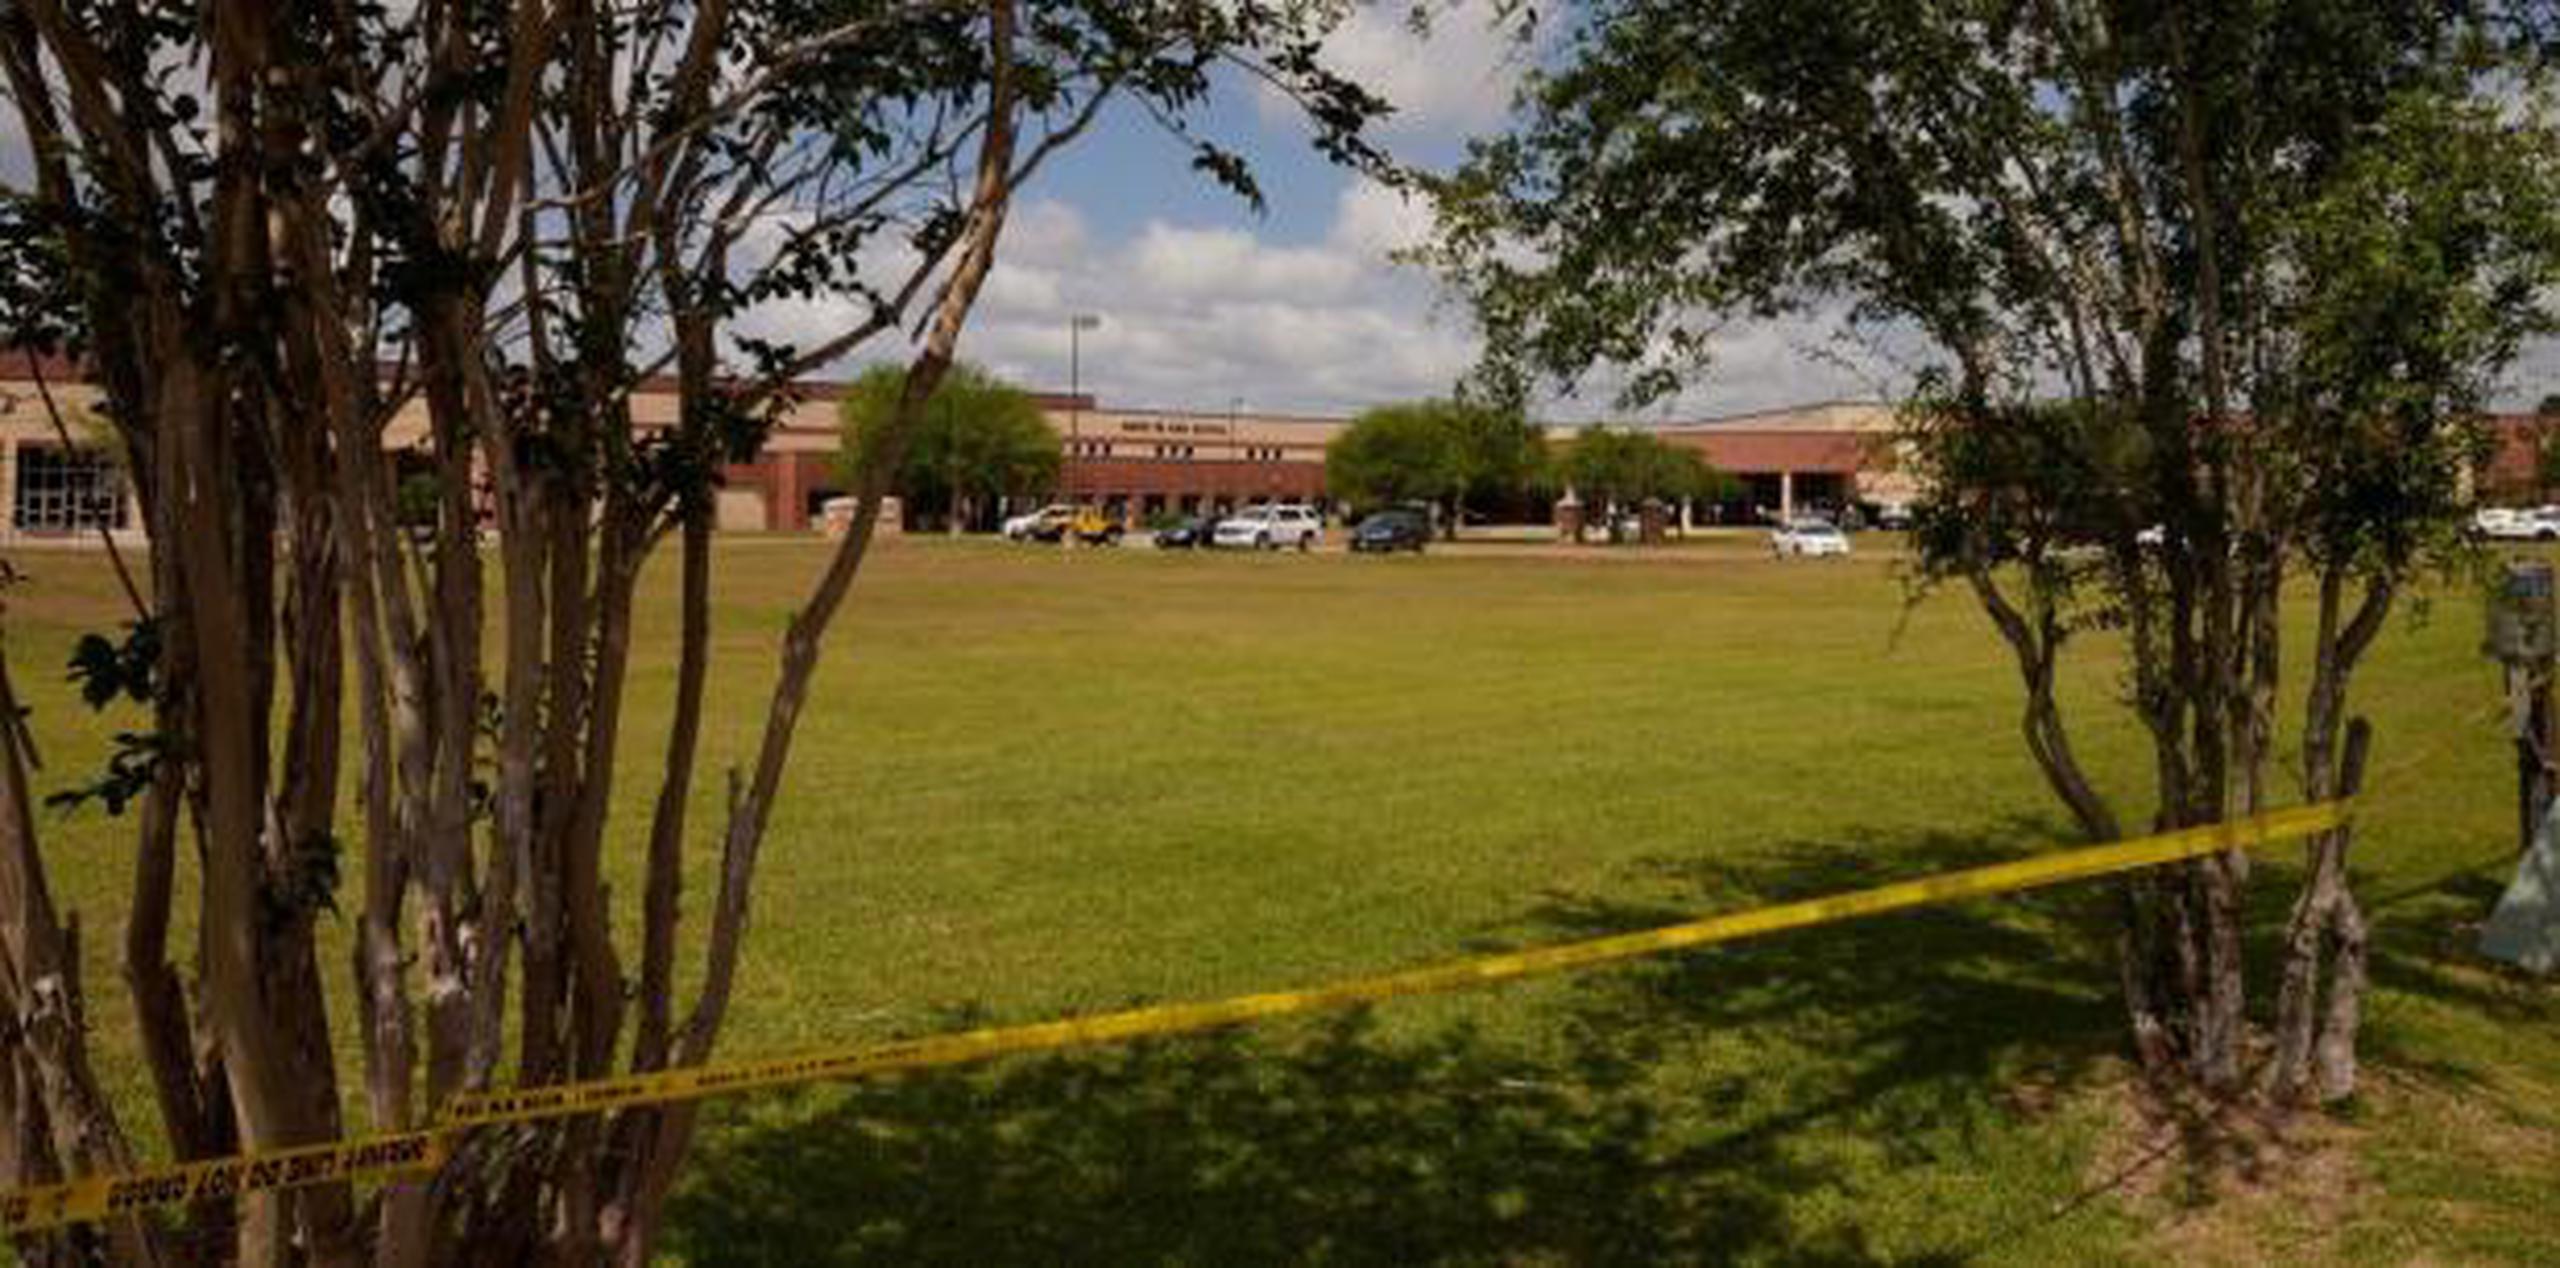 La matanza de 10 personas en una escuela secundaria de Texas ocurrida la semana pasada se suma a una larga lista de episodios de este tipo en sitios como esos. (EFE)